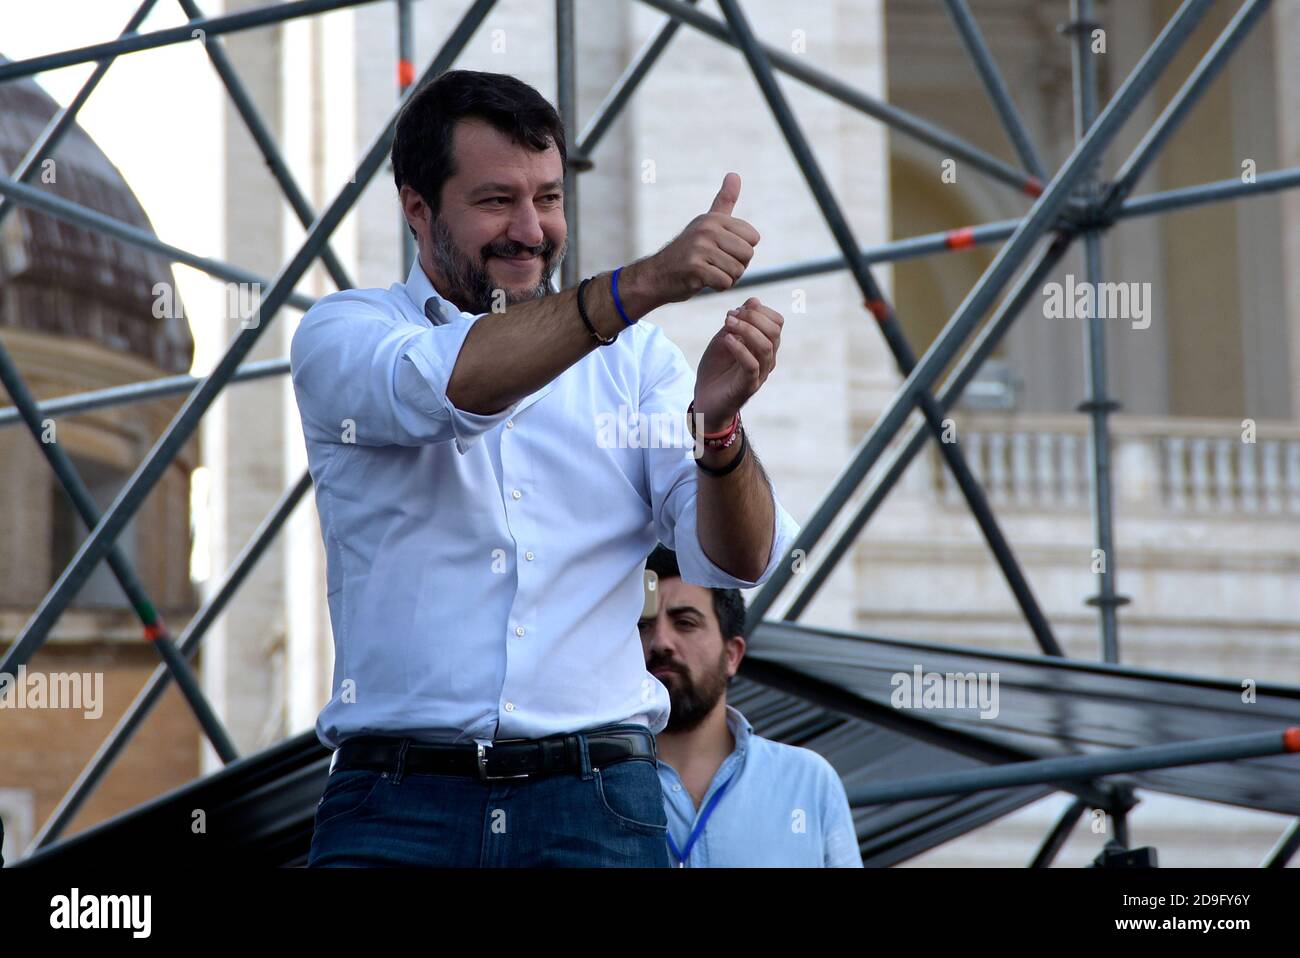 Matteo Salvini, chef de la partie Lega, accueille le public lors de l'événement « fierté italienne » sur la Piazza San Giovanni, qui réunit les partis de droite italiens Lega, Fratelli d'Italia et Forza Italia. Banque D'Images